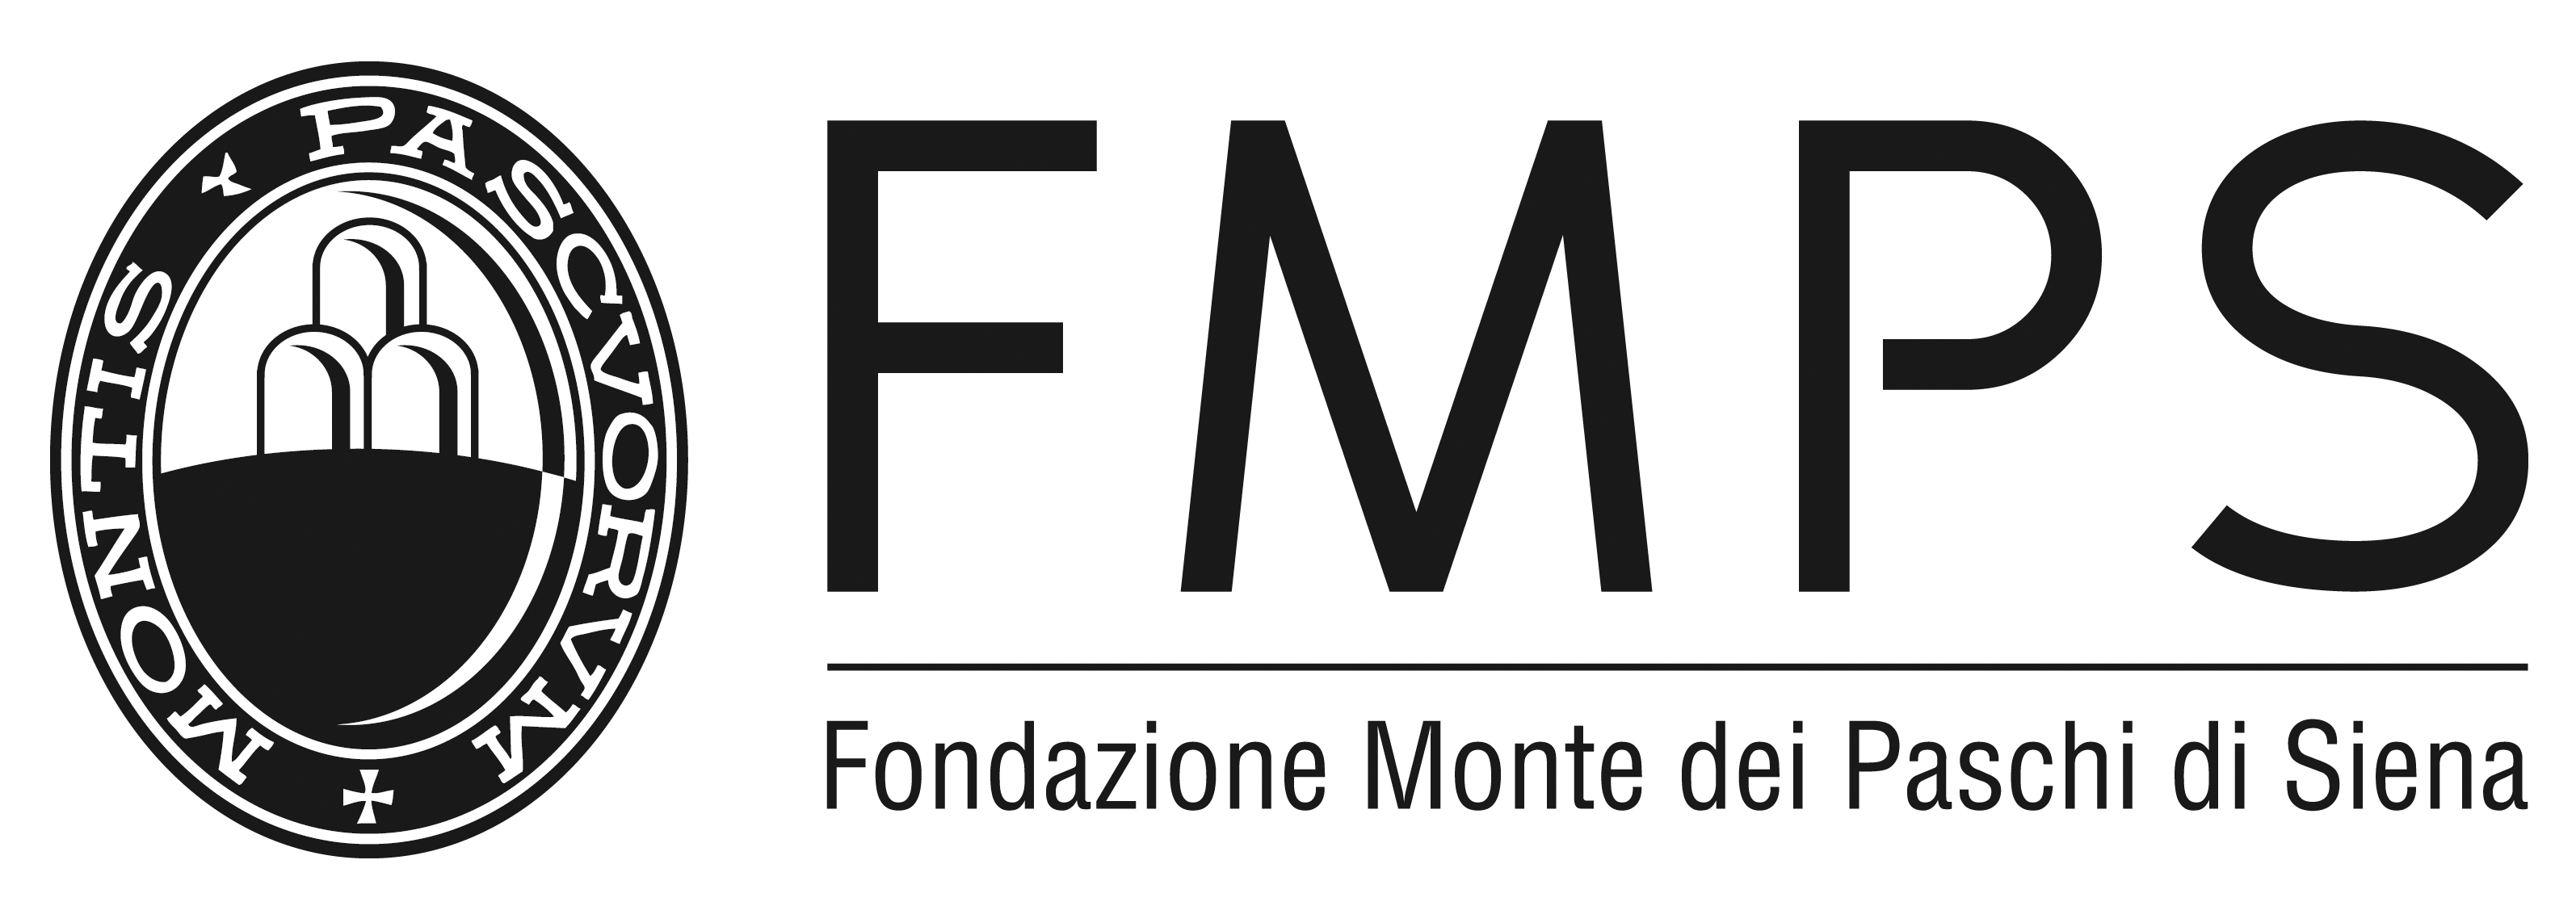 Fondazione Monte dei Paschi di Siena